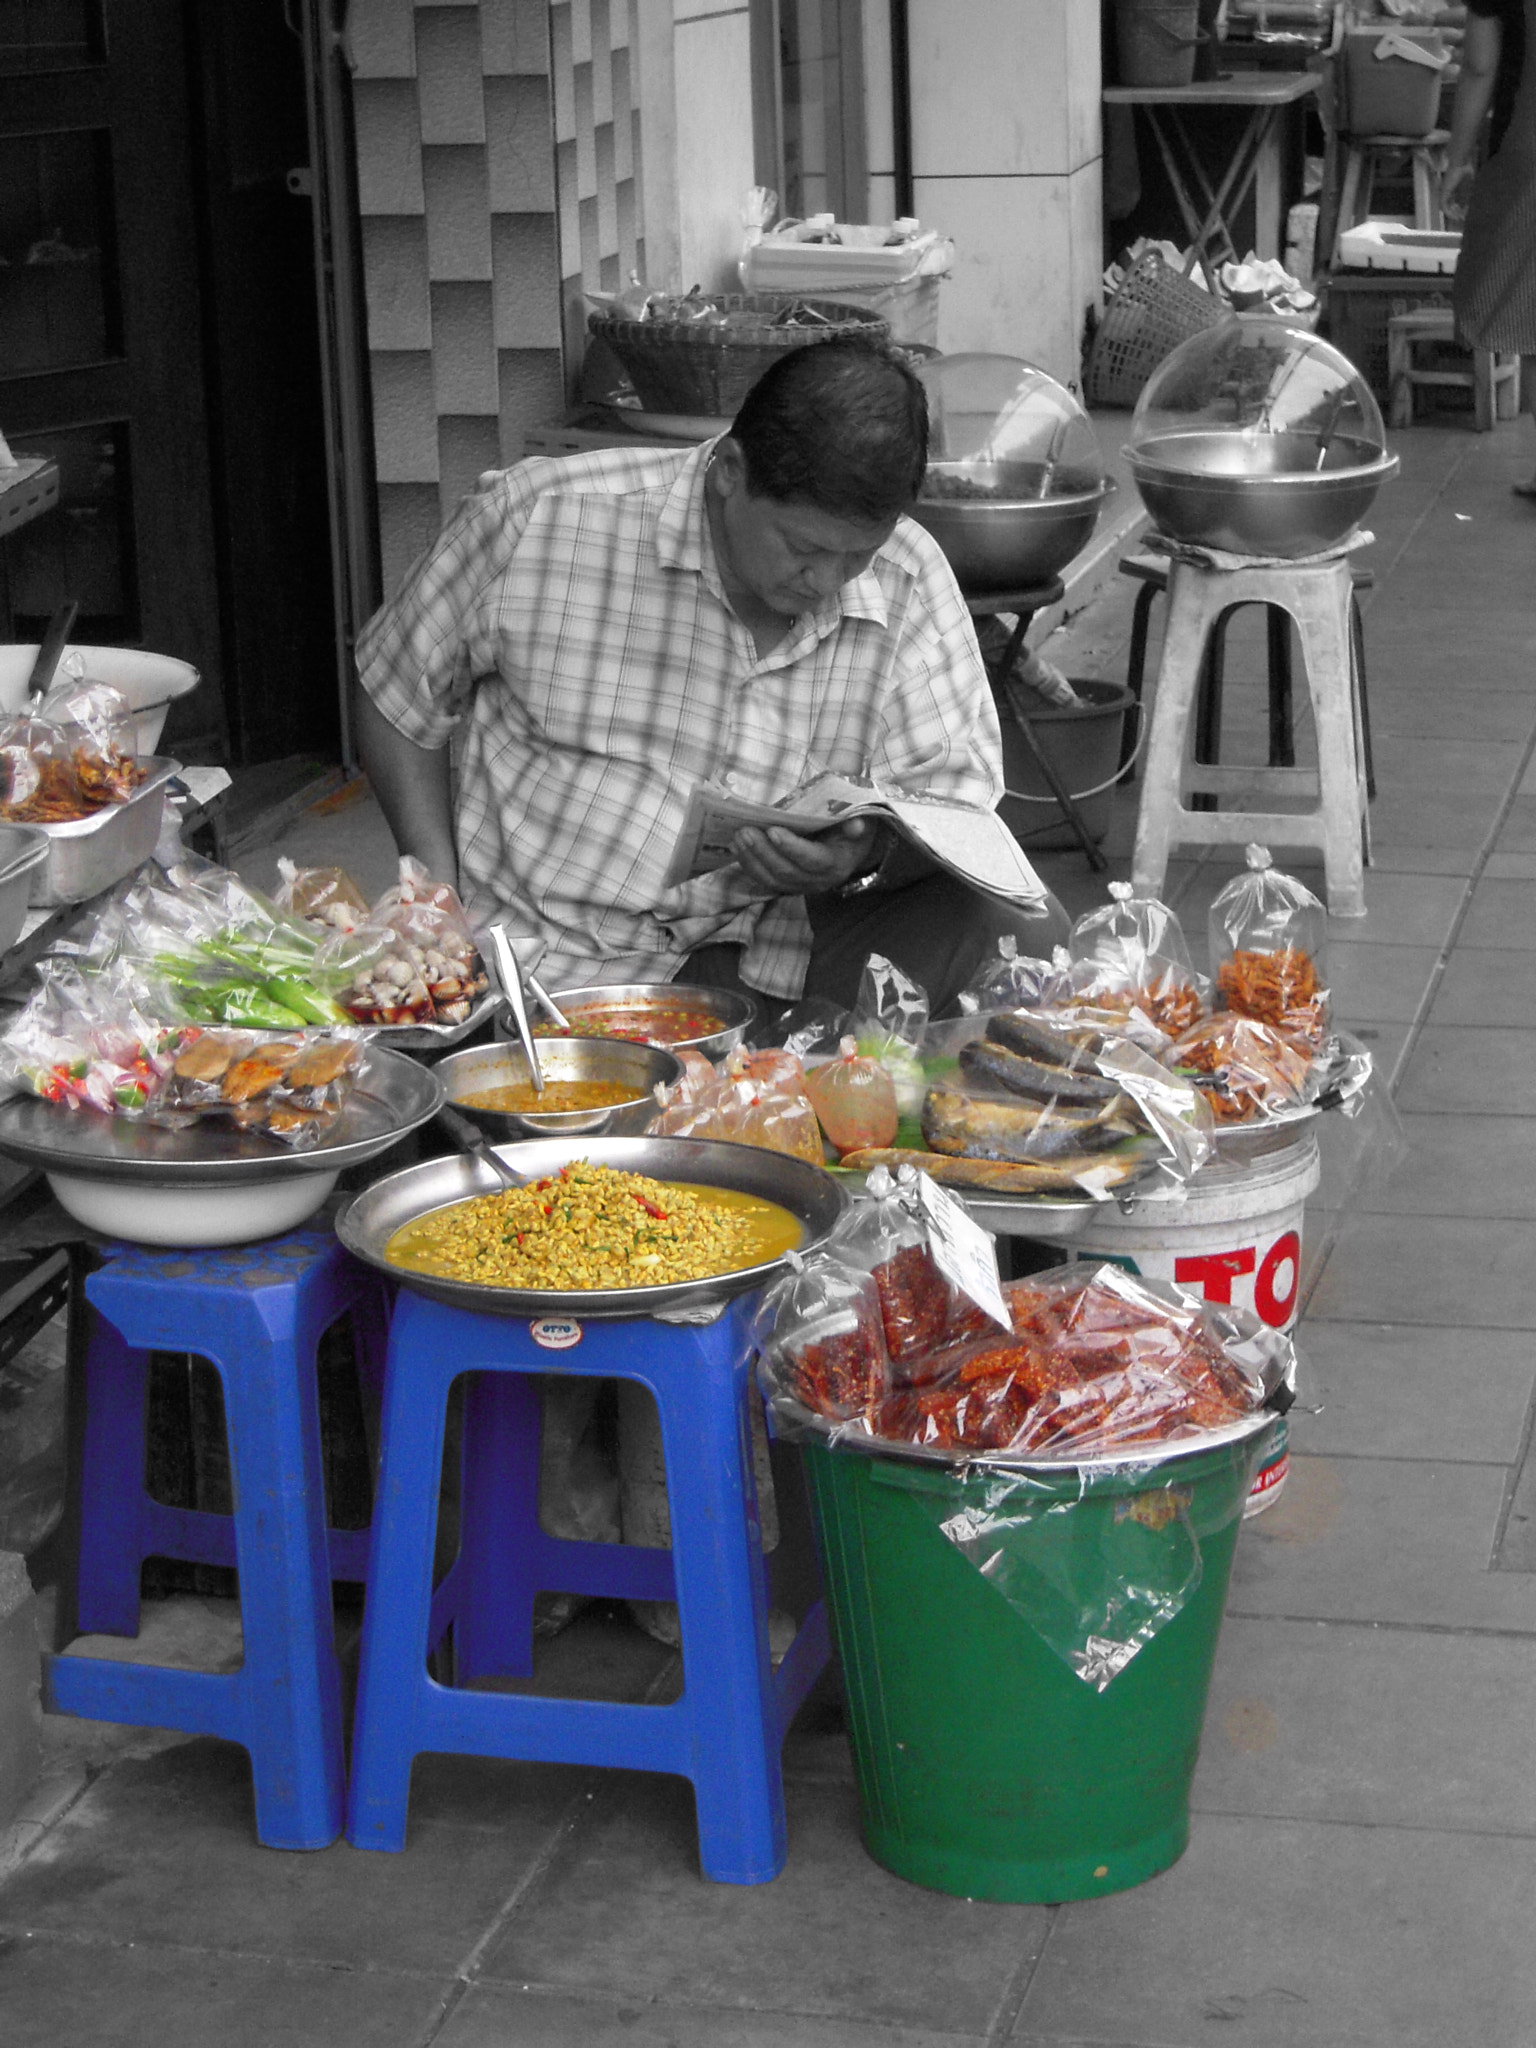 Nikon Coolpix S610c sample photo. Street food bangkok photography